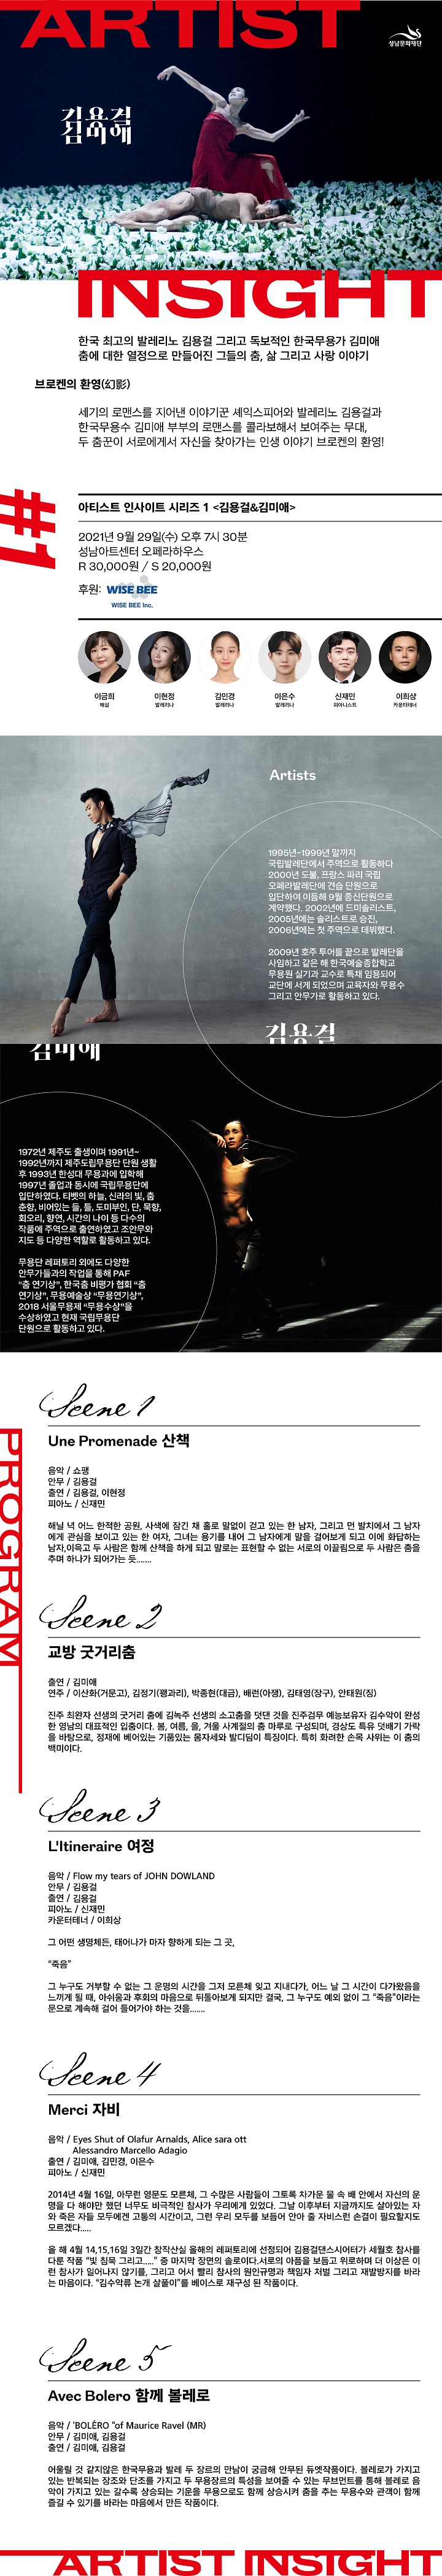 아티스트 인사이트 Ⅰ〈발레리노 김용걸 ＆ 한국무용가 김미애〉/ Artist Insight Ⅰ〈Ballerino Kim Yong-gul ＆ Traditonal Dancer Kim Mi-ae〉/ 21.09.29 WED / 19: 30 / 미취학아동 입장불가 / R 30,000 S 20,000